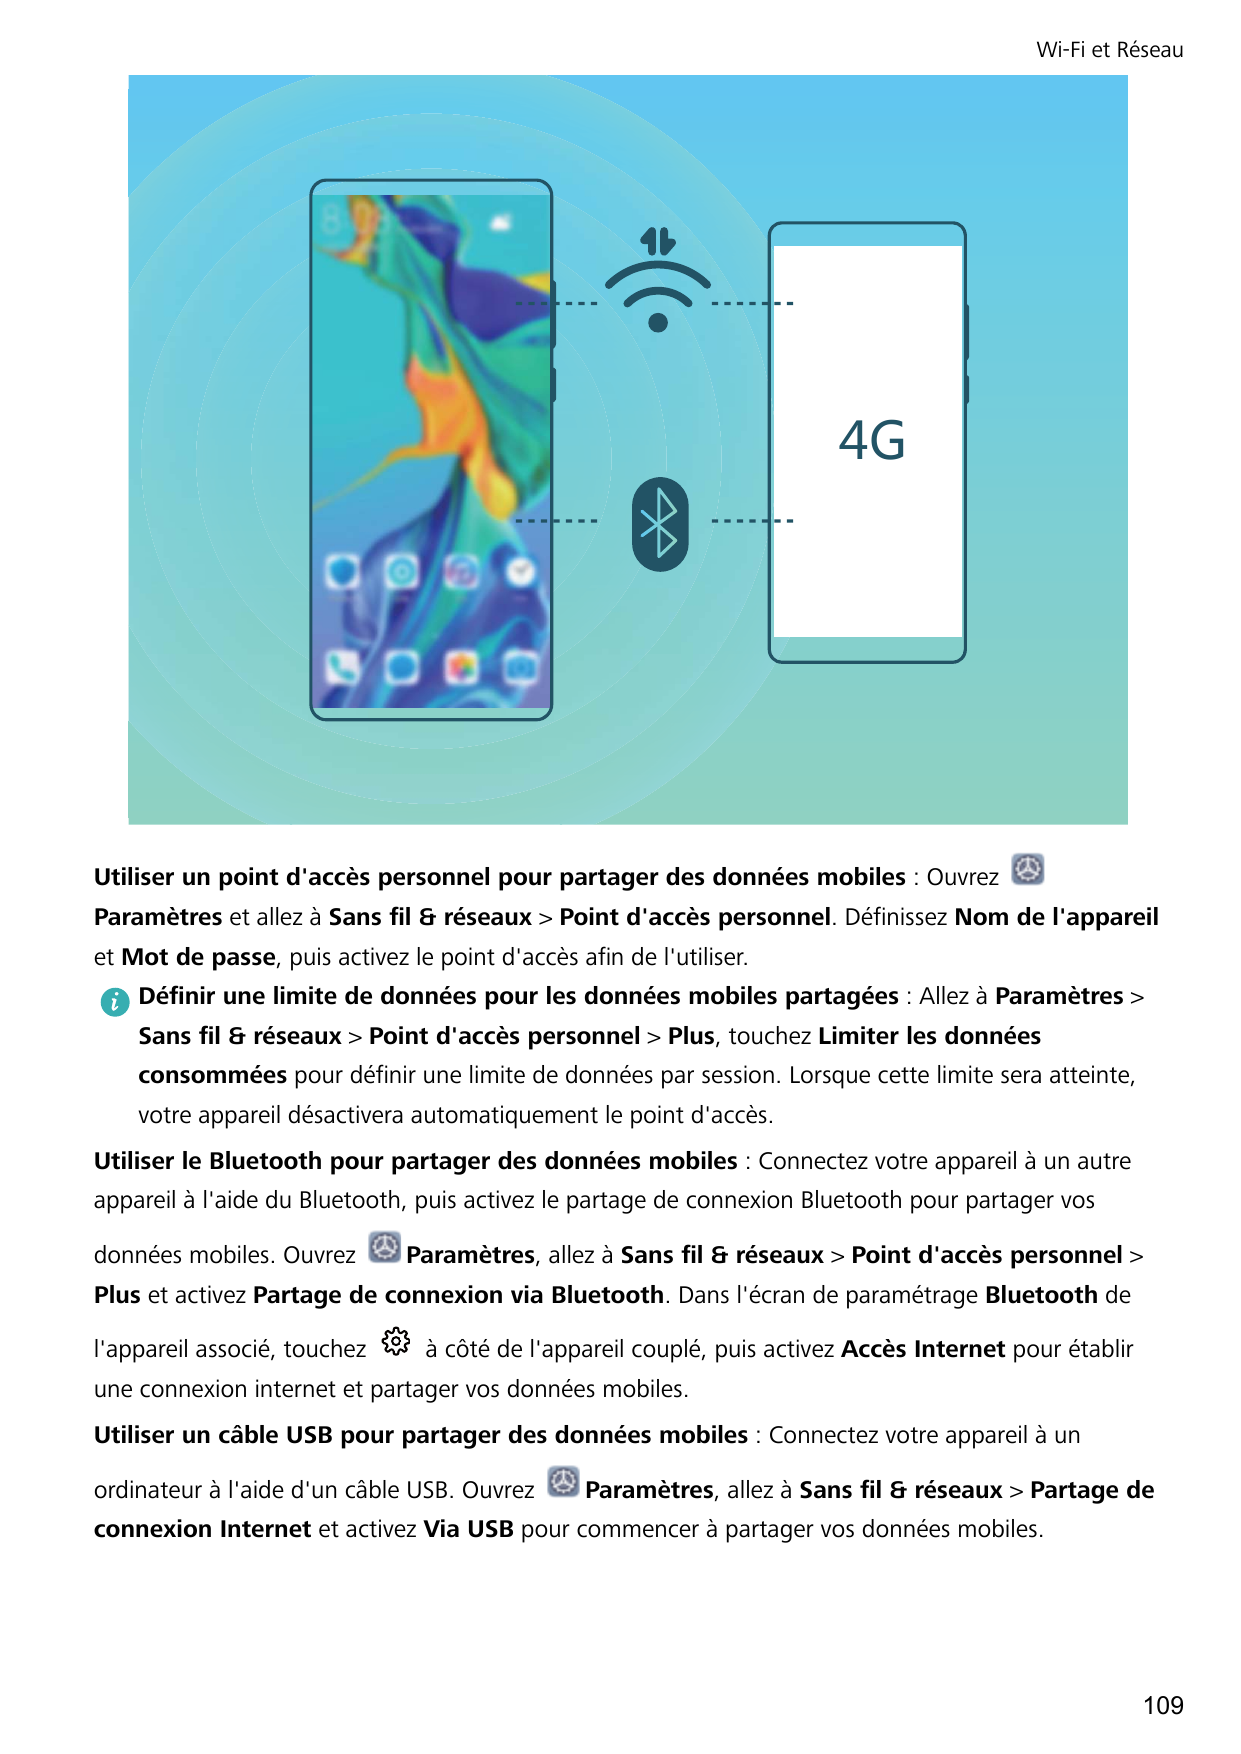 Wi-Fi et Réseau-Utiliser un point d'accès personnel pour partager des données mobiles : OuvrezParamètres et allez à Sans fil & r